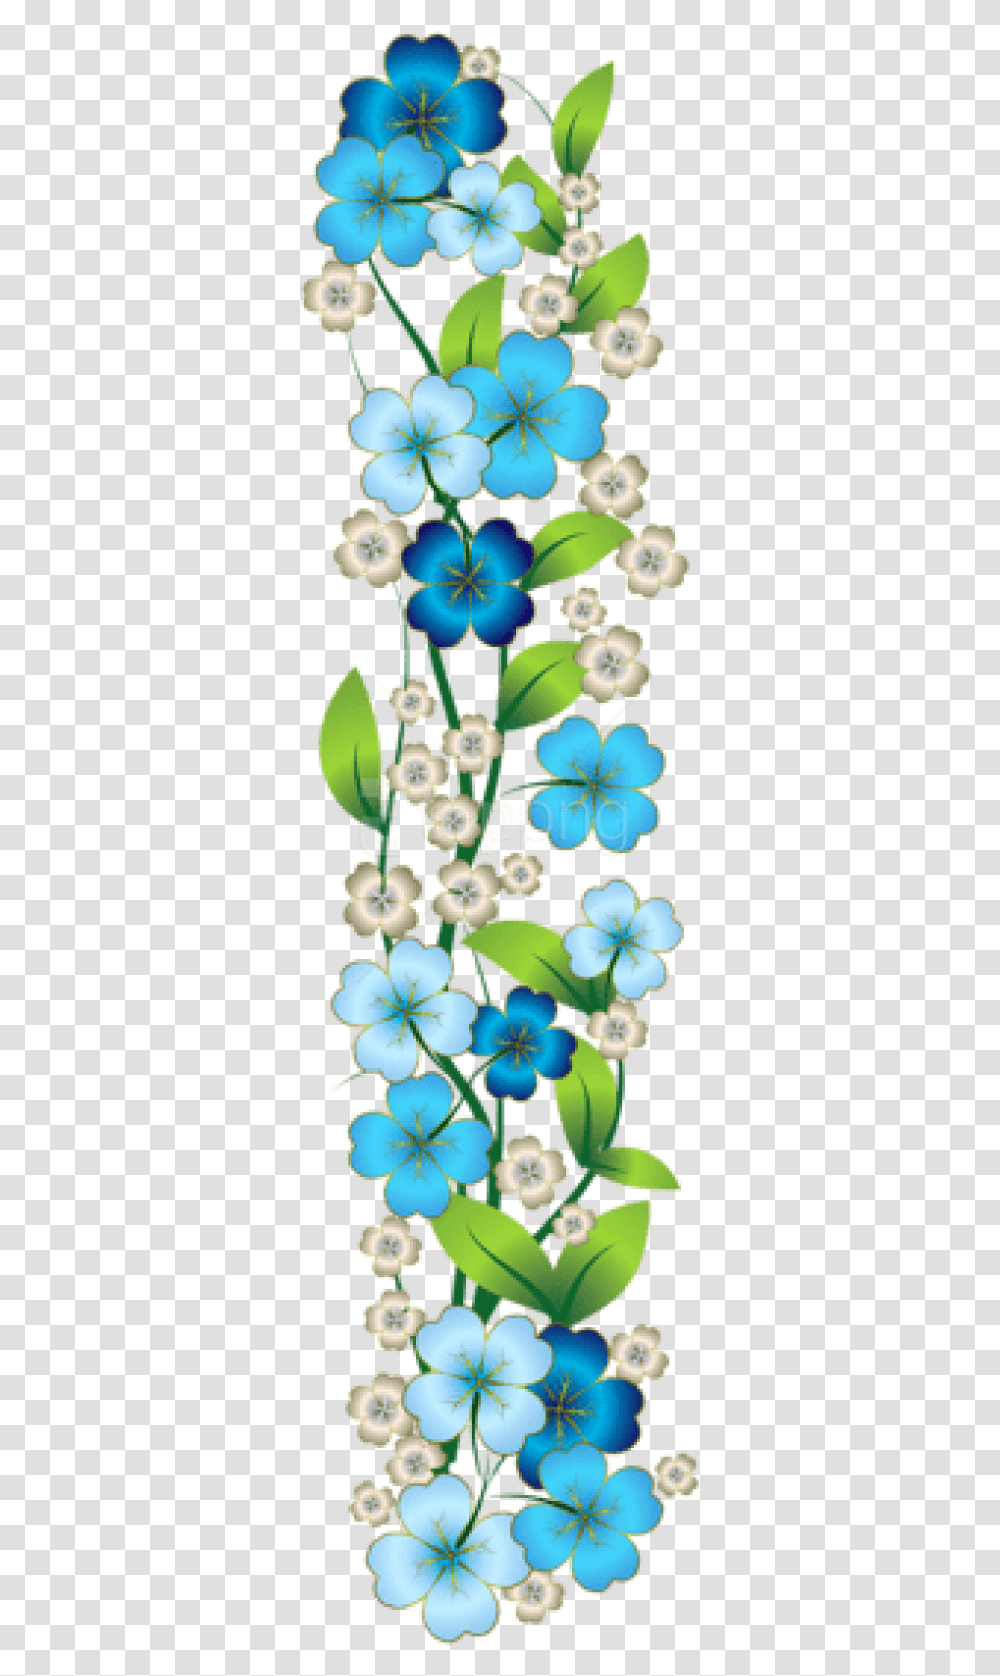 Free Download Blue Flower Decor Clipart Photo Blue Yellow Flower Border, Plant, Blossom, Petal, Geranium Transparent Png